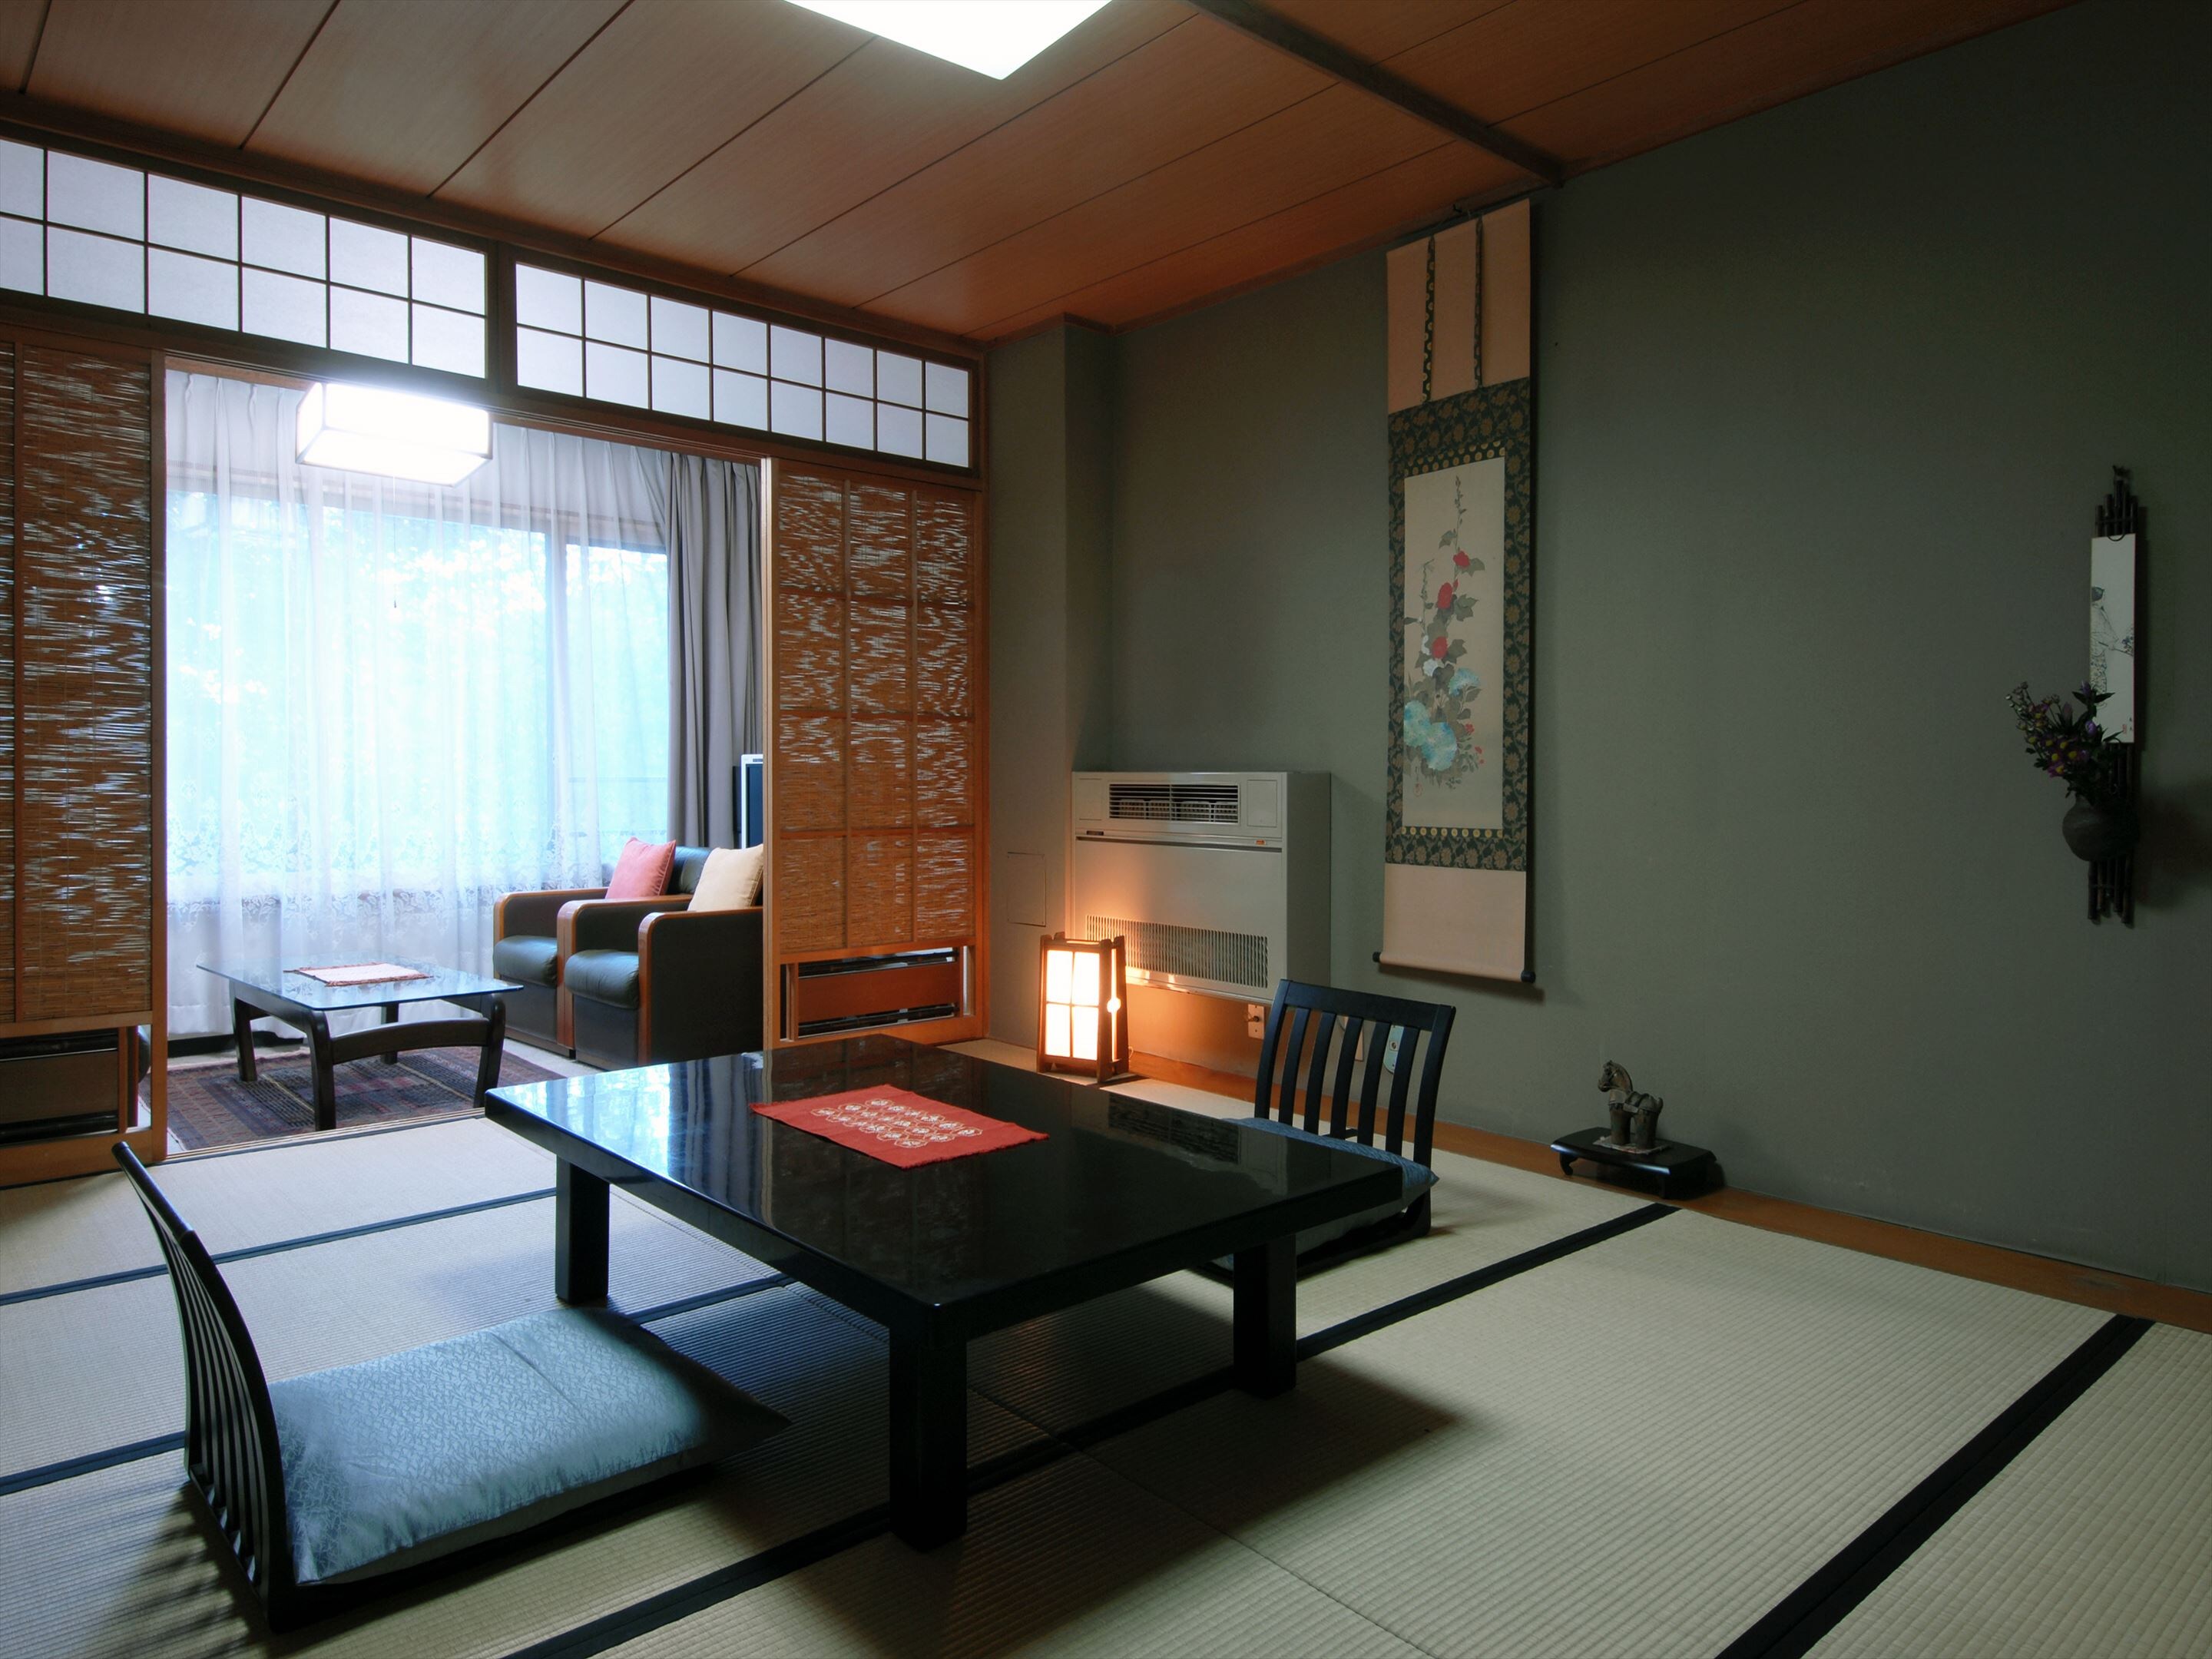 Kamar bergaya Jepang 14 tatami sangat ideal bagi mereka yang ingin bersantai bersama!